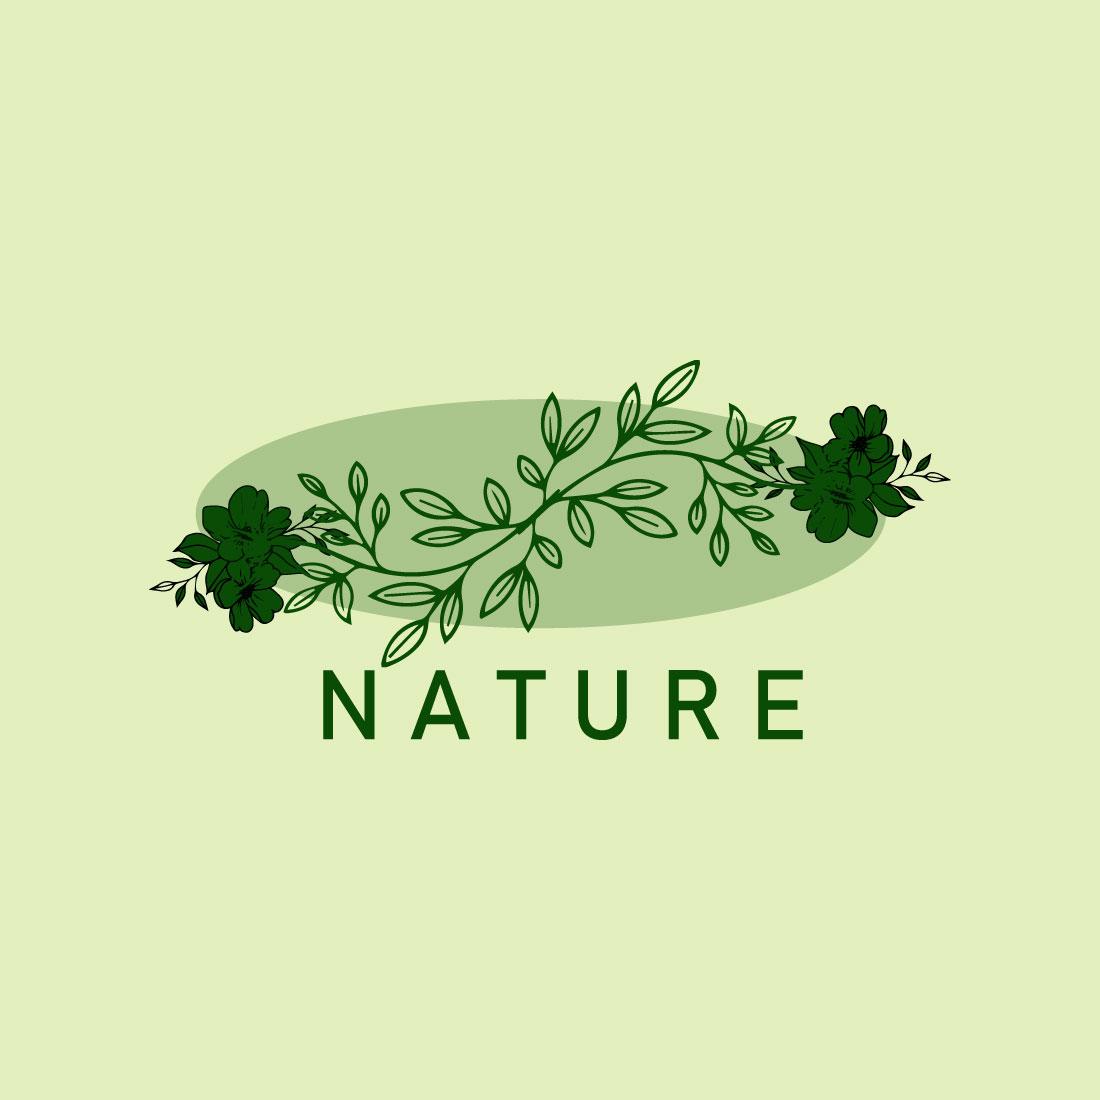 Free vintage botanical naural logo preview image.